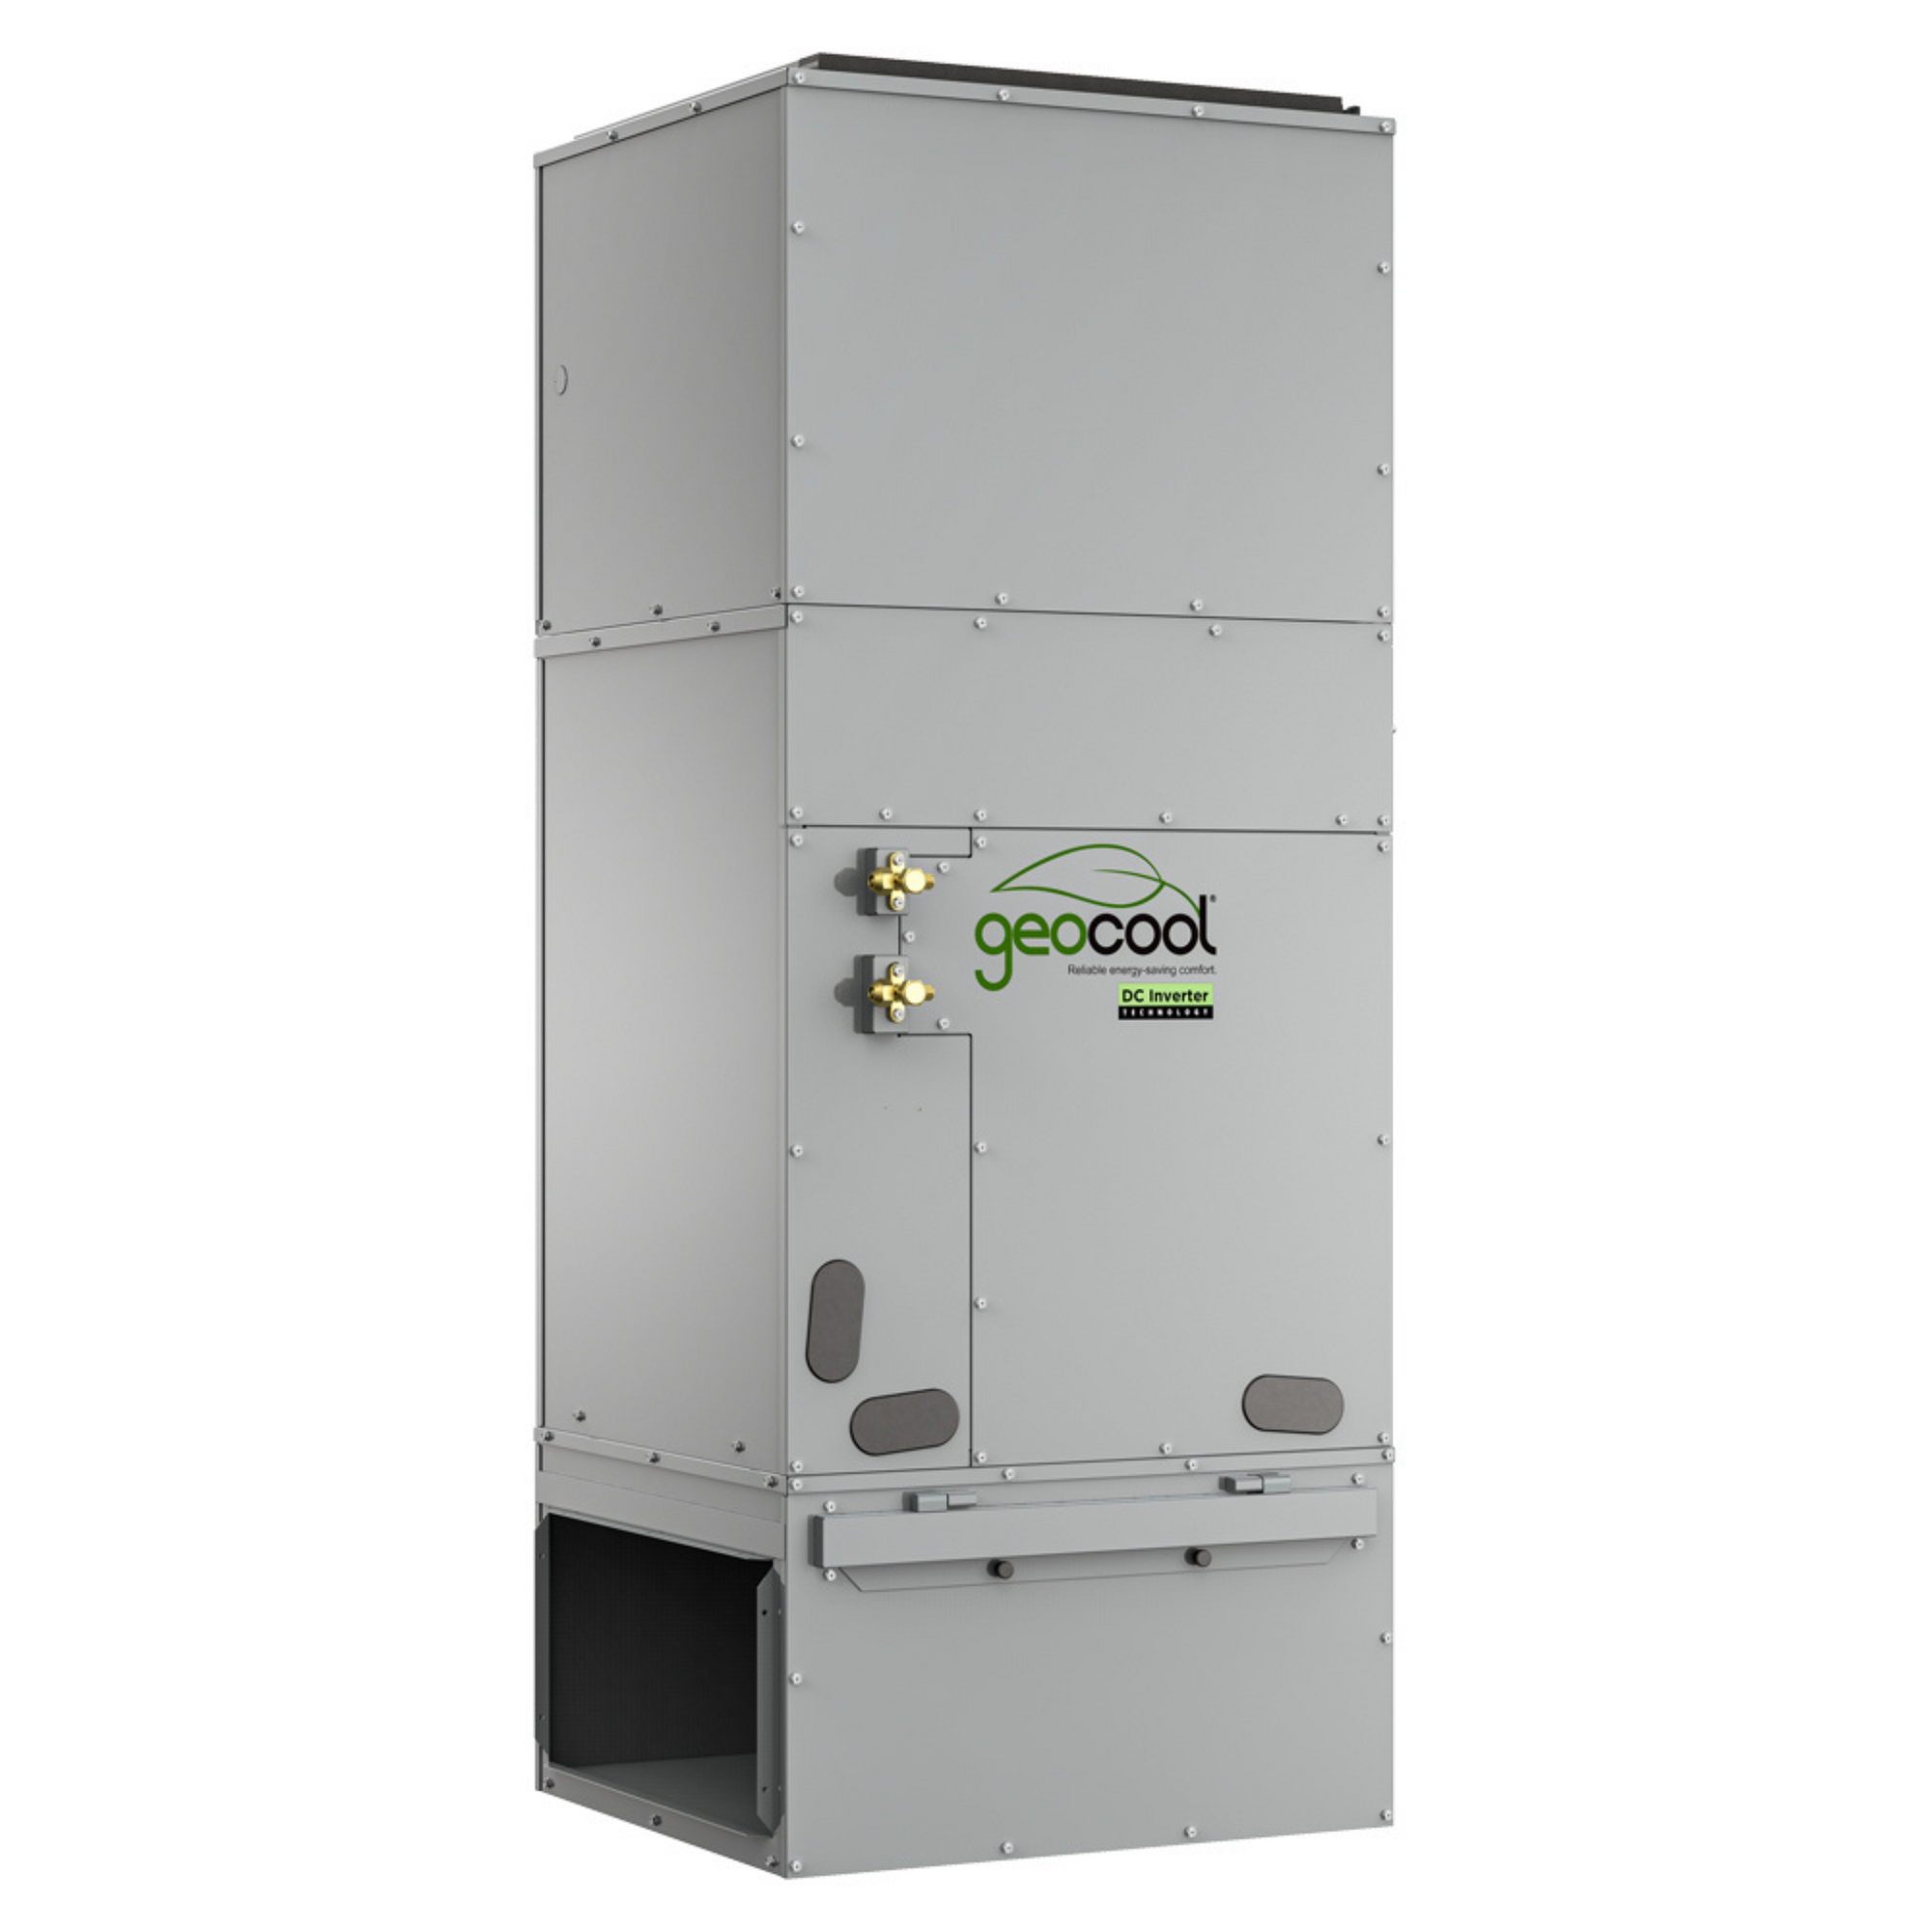 MRCOOL GeoCool Inverter 48K BTU Geothermal Heat Pump